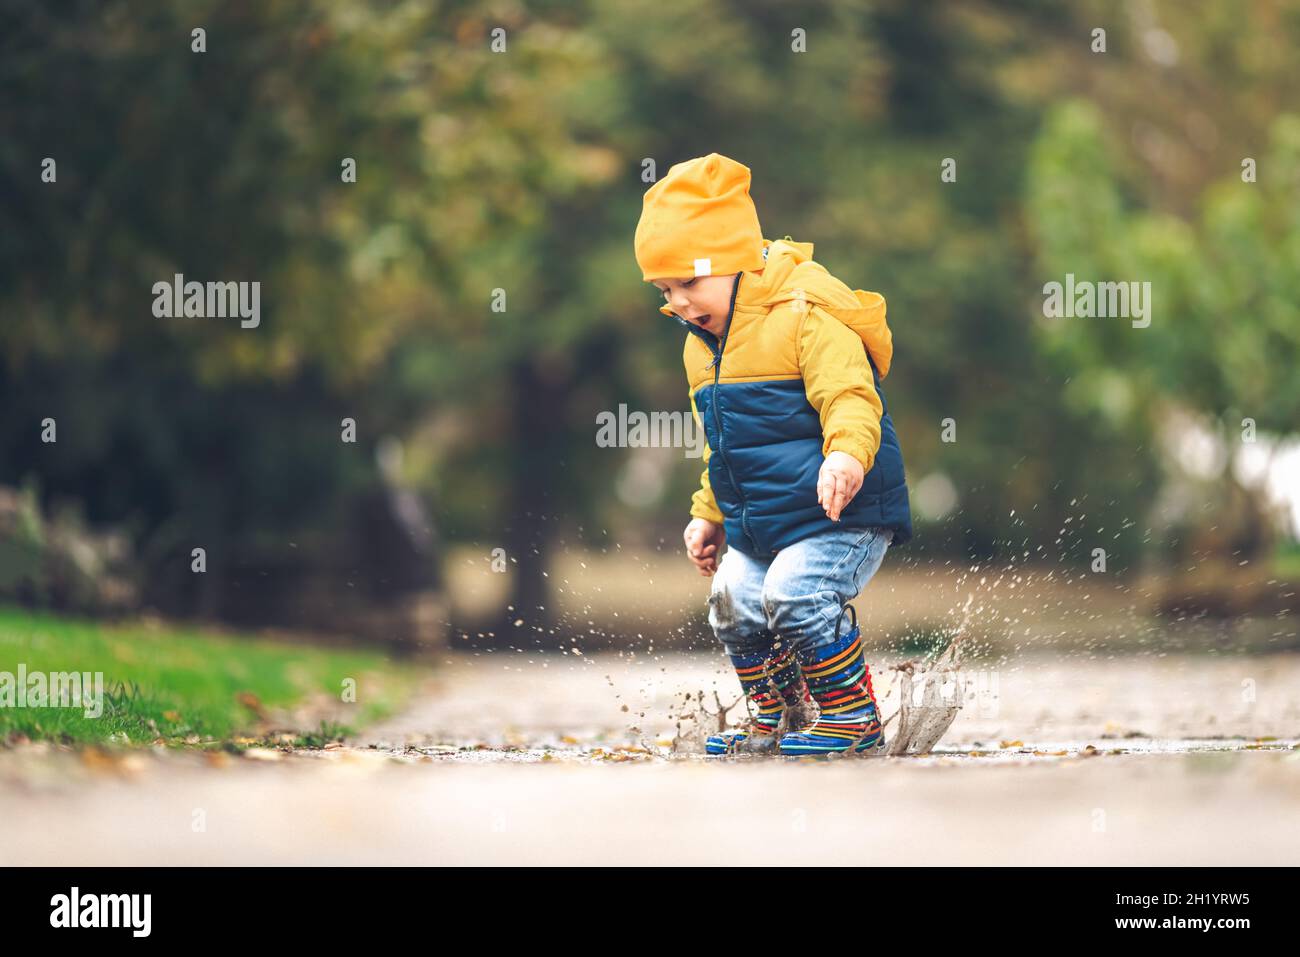 Glücklicher kleiner Junge, der im Herbst auf einer verregneten Pfütze auf die Natur springt Stockfoto